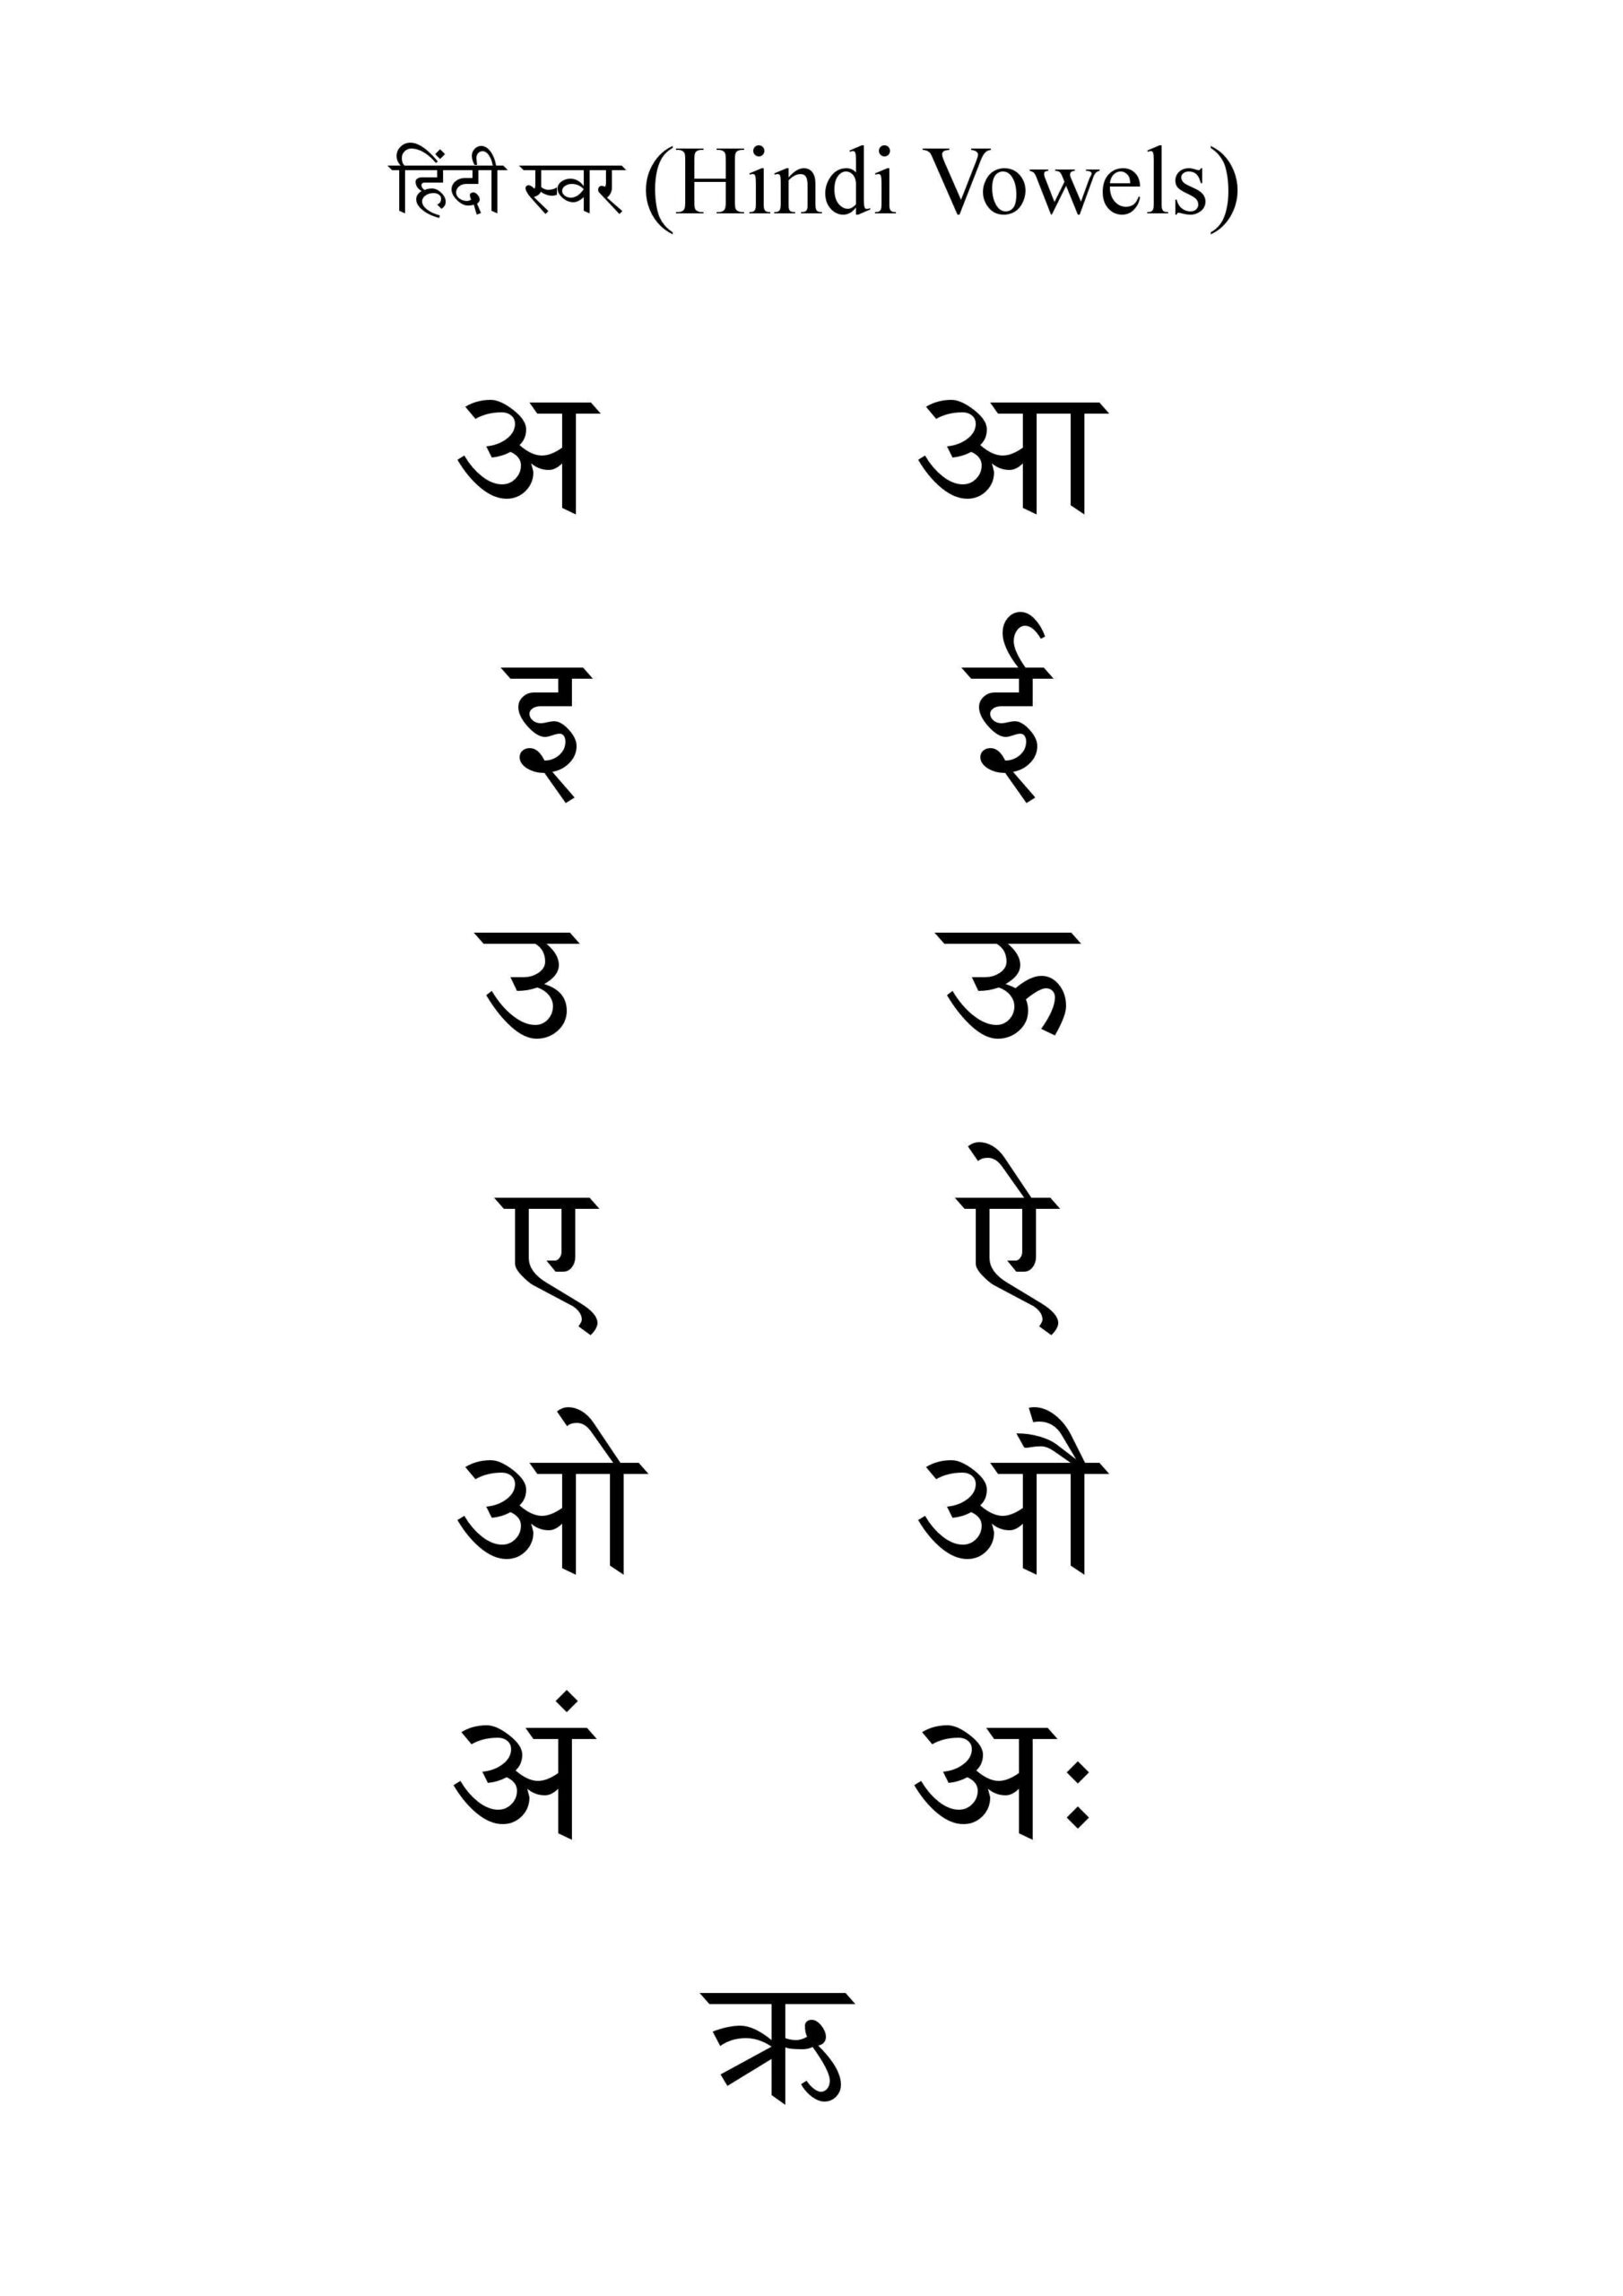 Hindi Vowels | Learn Hindi, Hindi Alphabet, Hindi Words